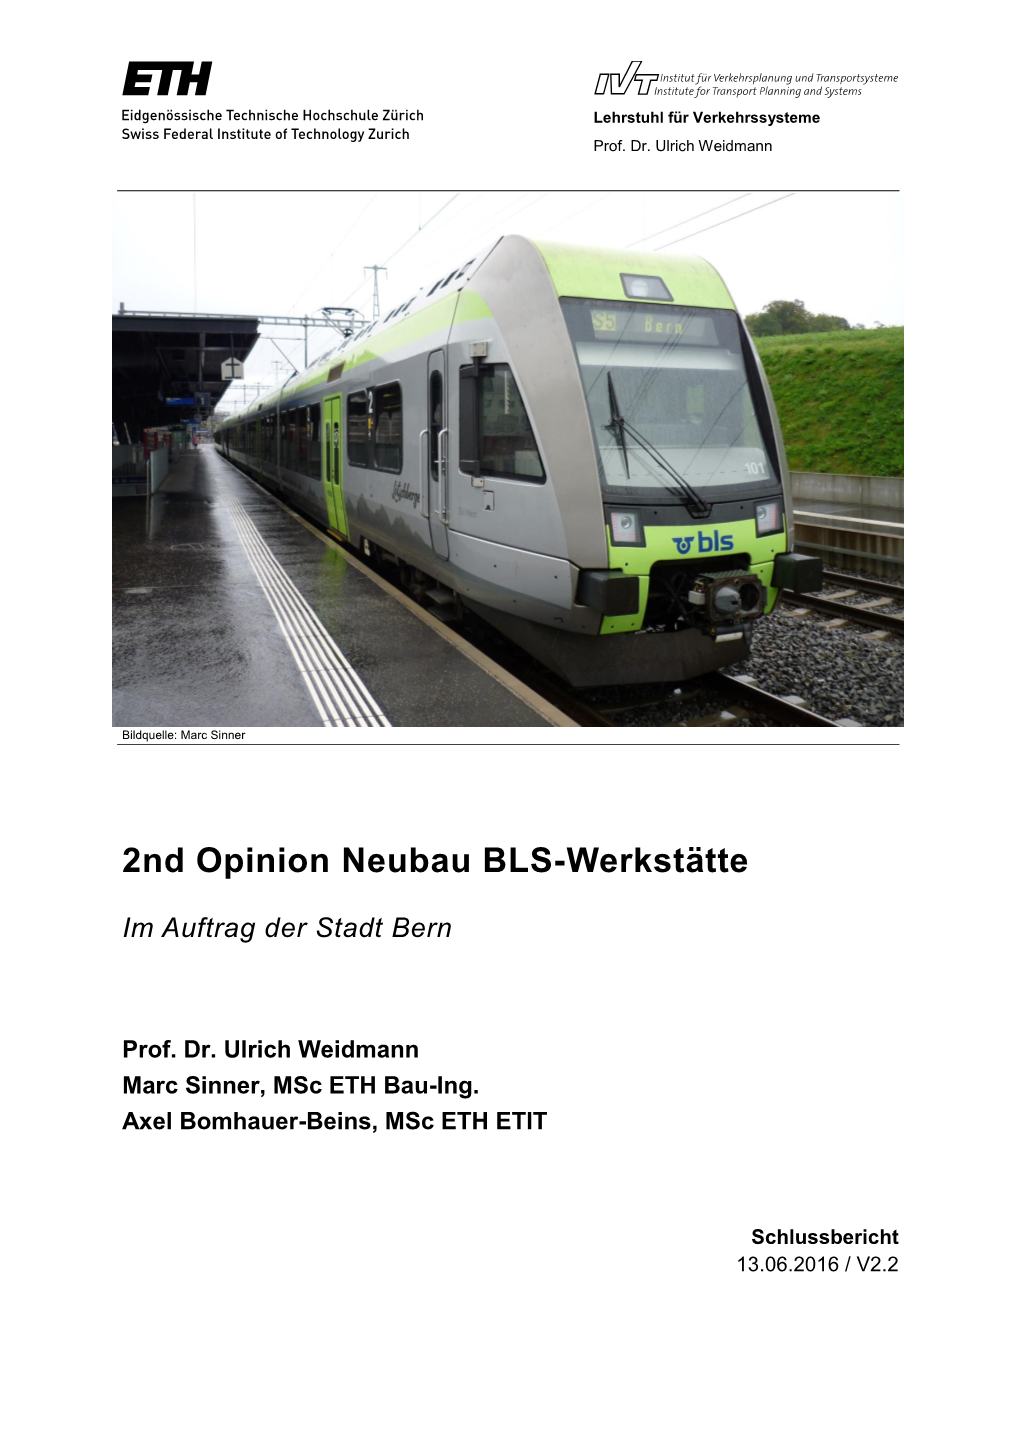 2Nd Opinion Neubau BLS-Werkstätte